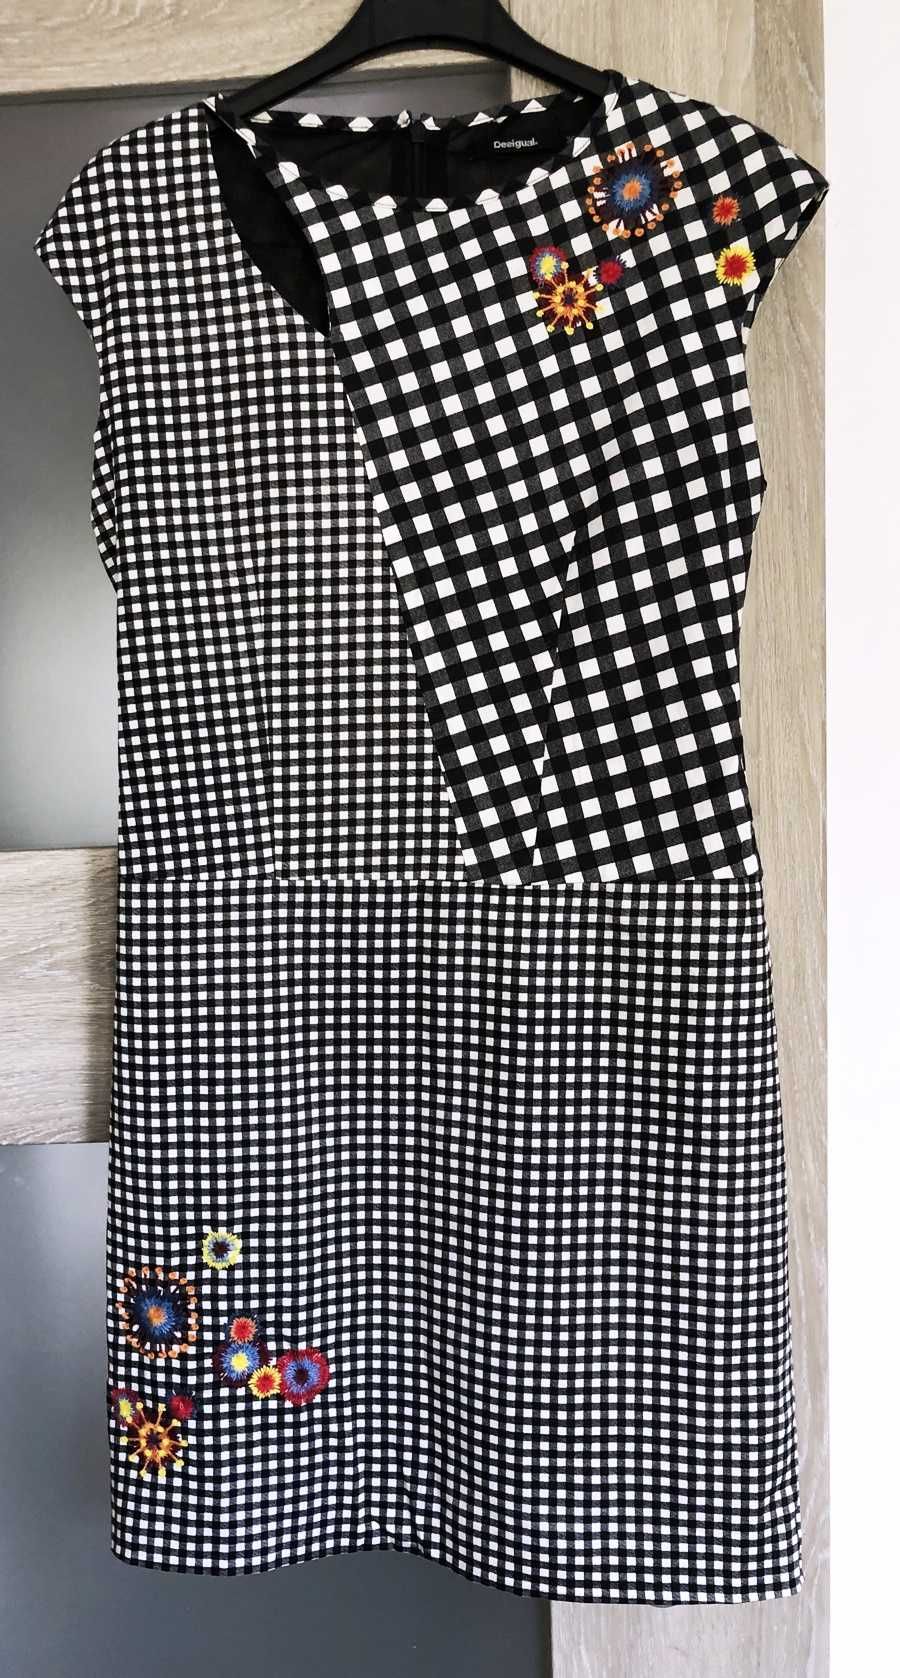 Śliczna sukienka Desigual, w tonacji czarno-białej, na podszewce, 36